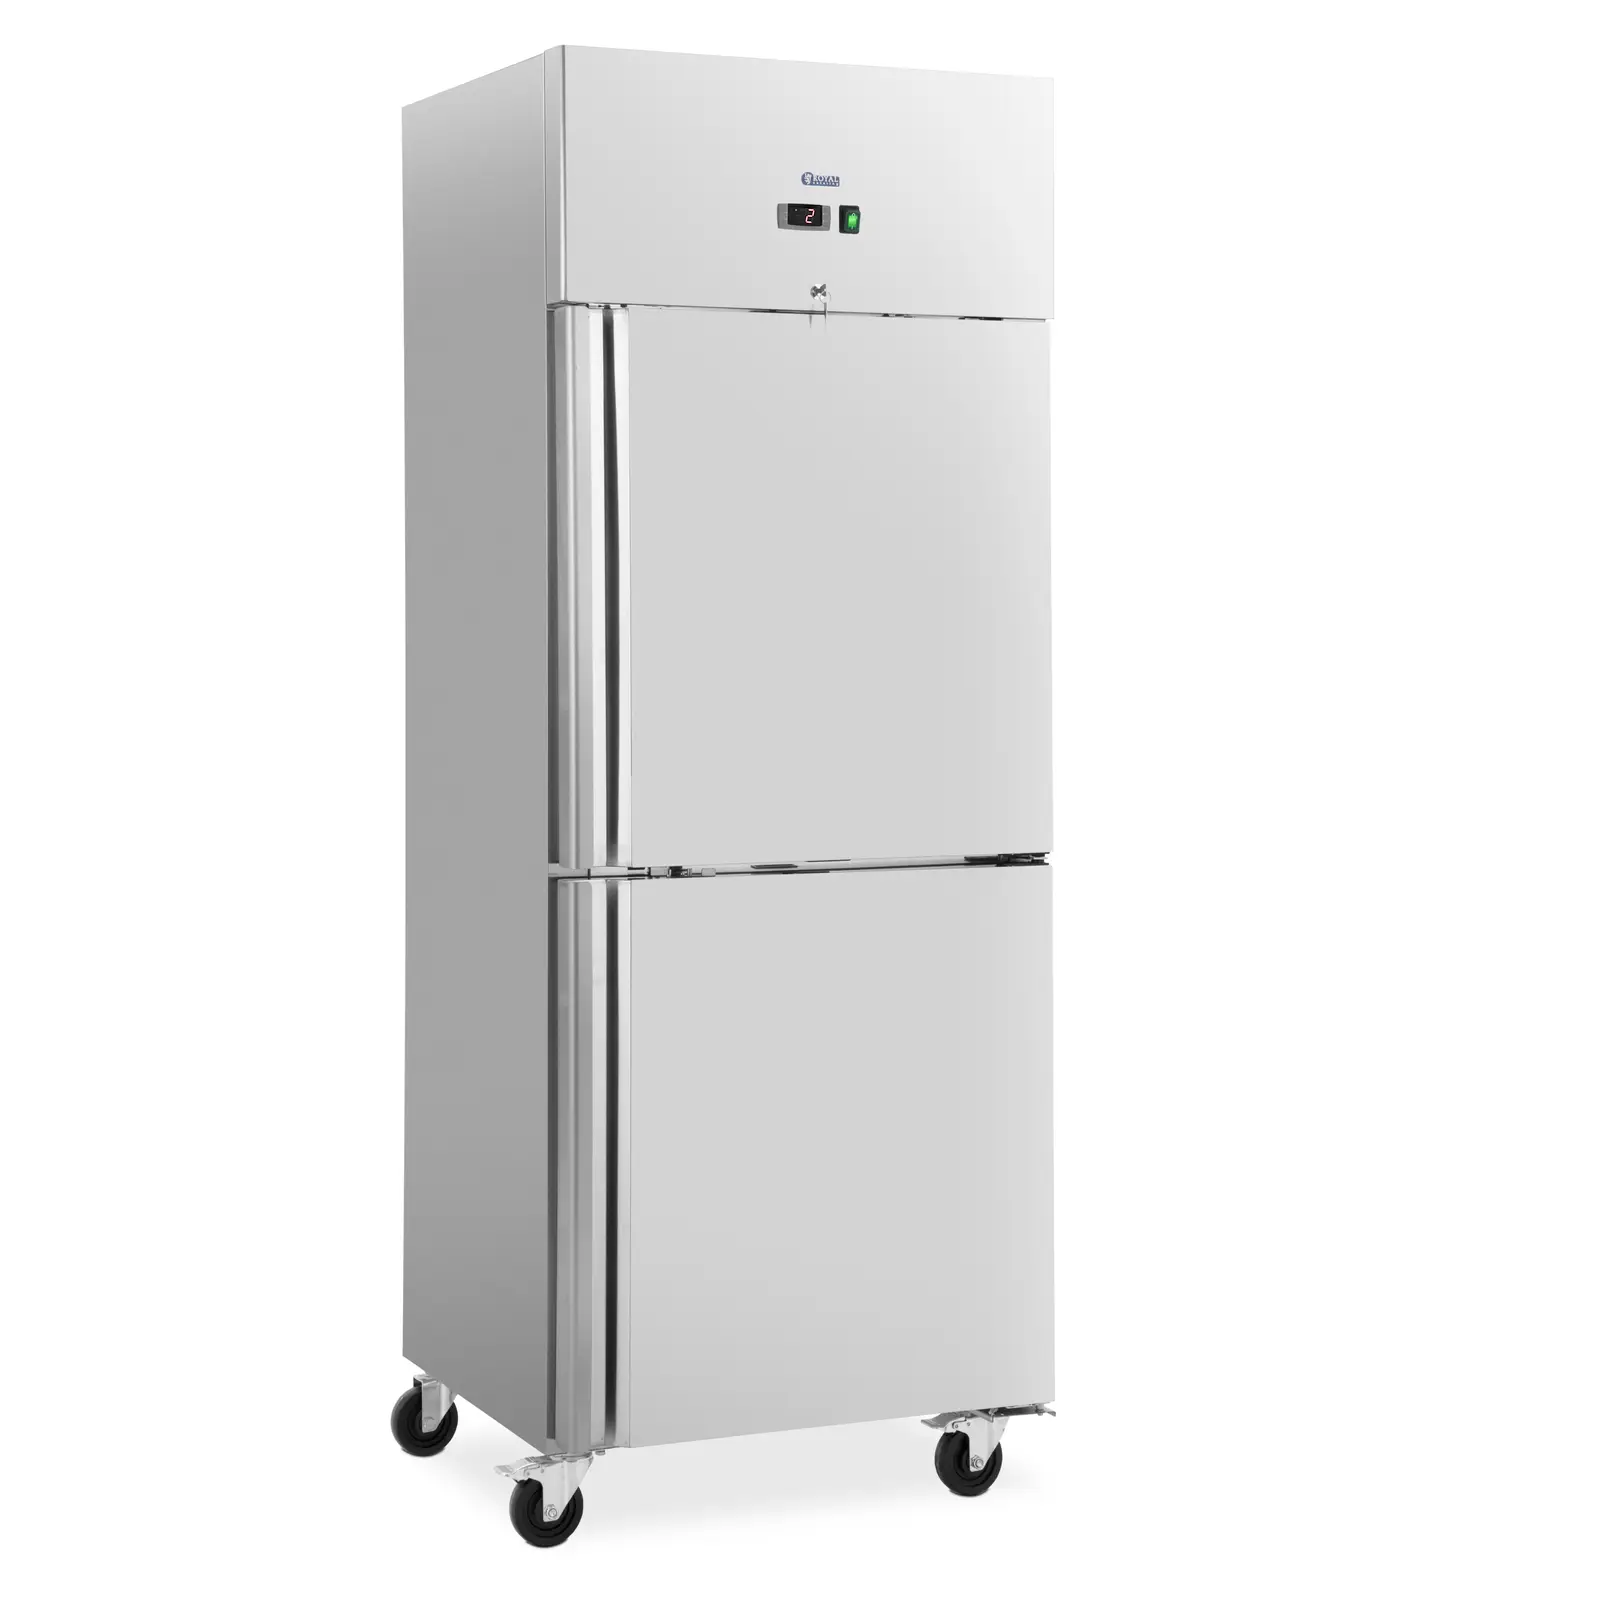 Refrigerador para gastronomía - 373 L - acero inoxidable - 2 puertas - 4 ruedas - con cerradura - Royal Catering